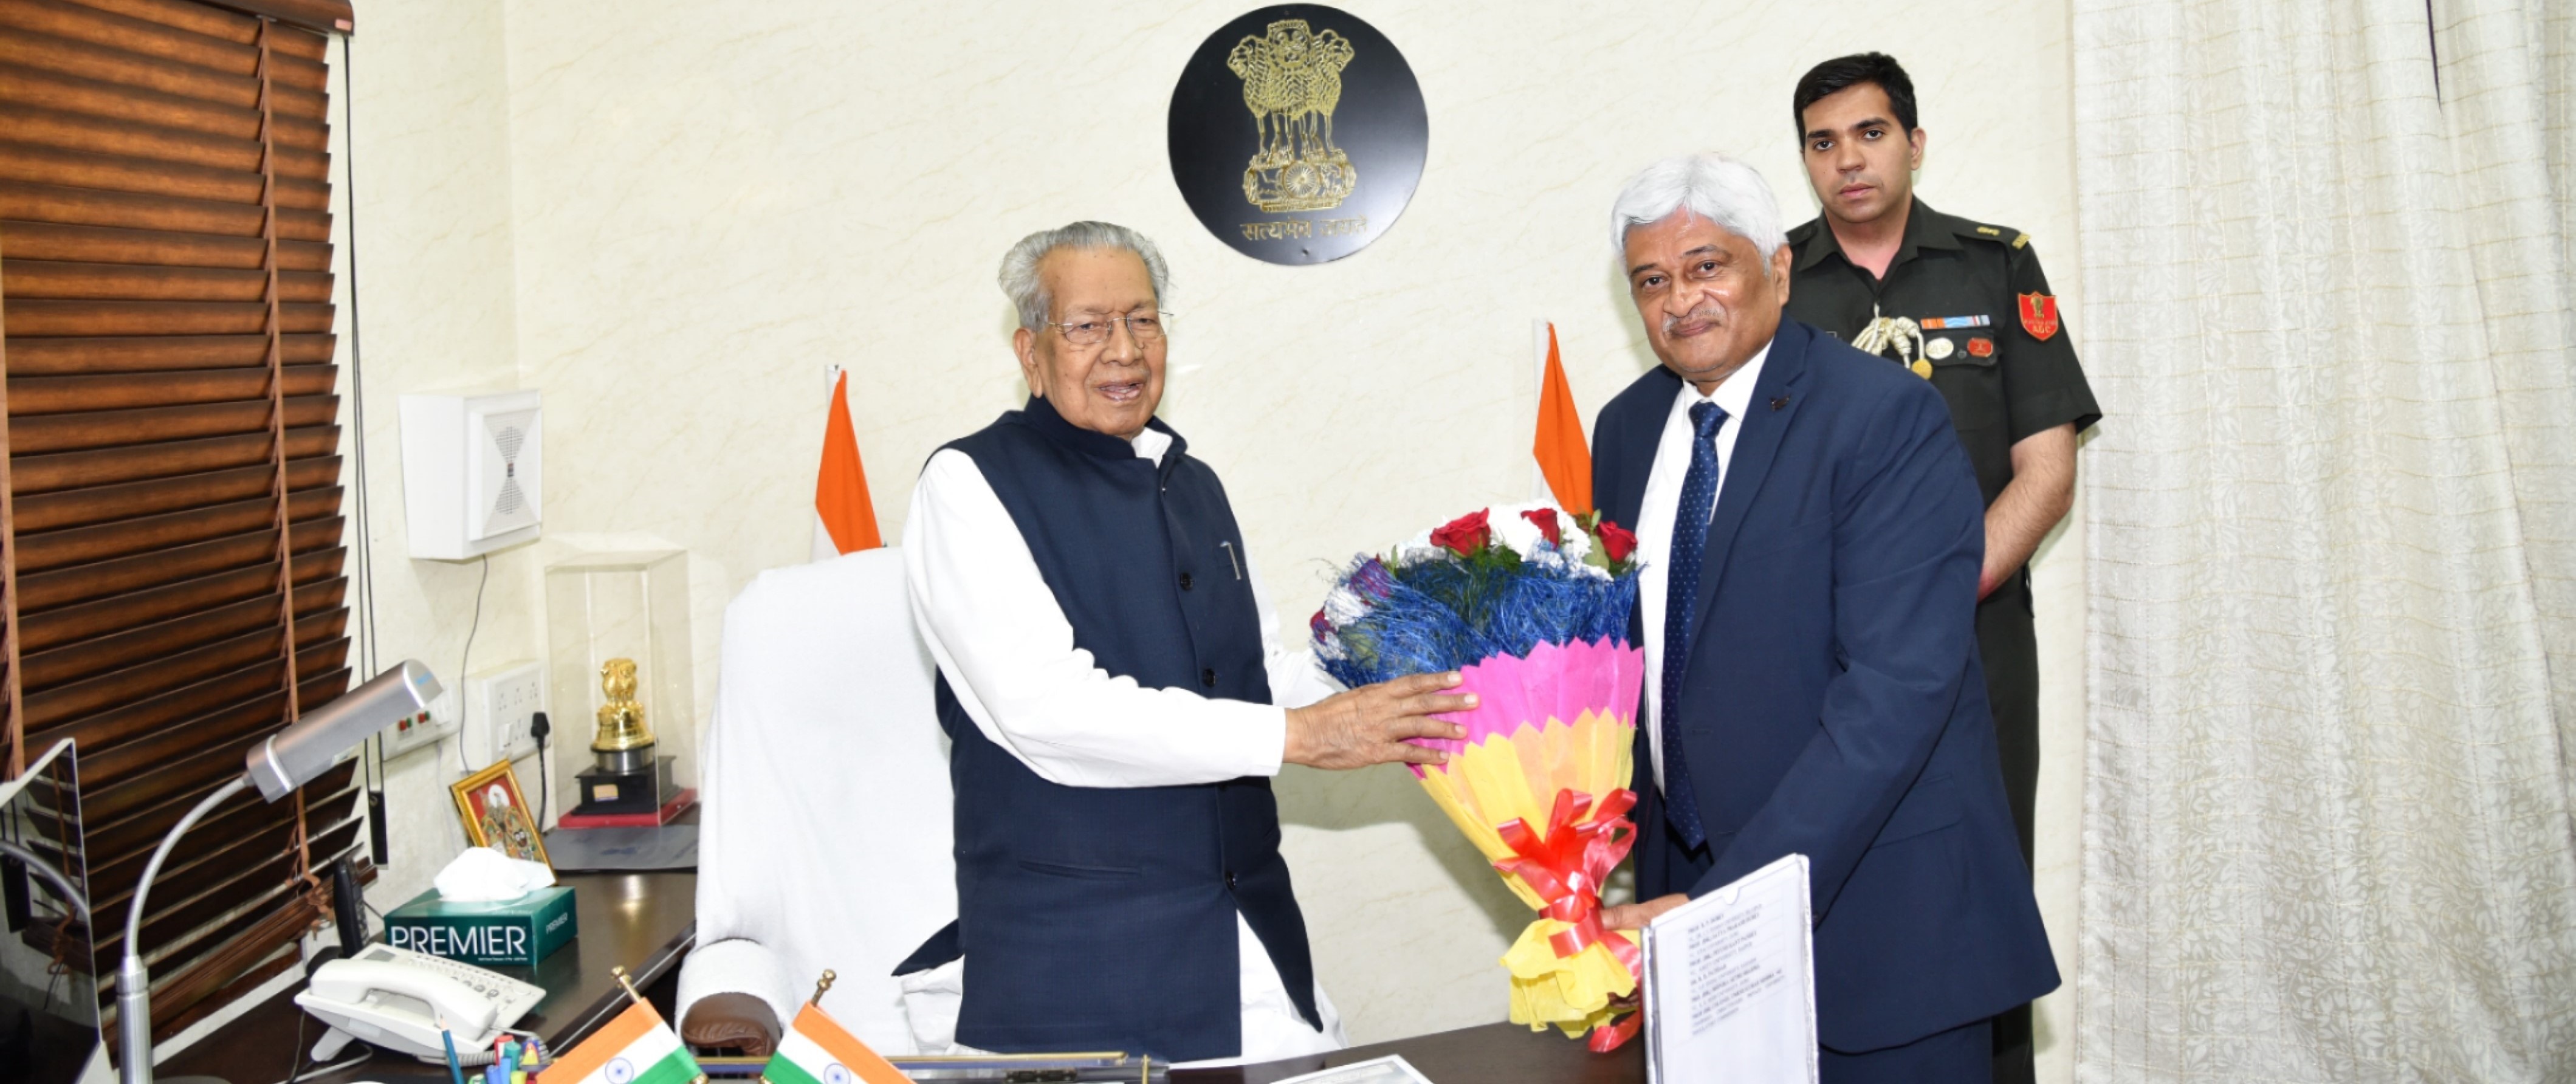 Vice Chancellor greeting Hon’ble Governor Shri Biswa Bhusan Harichandan